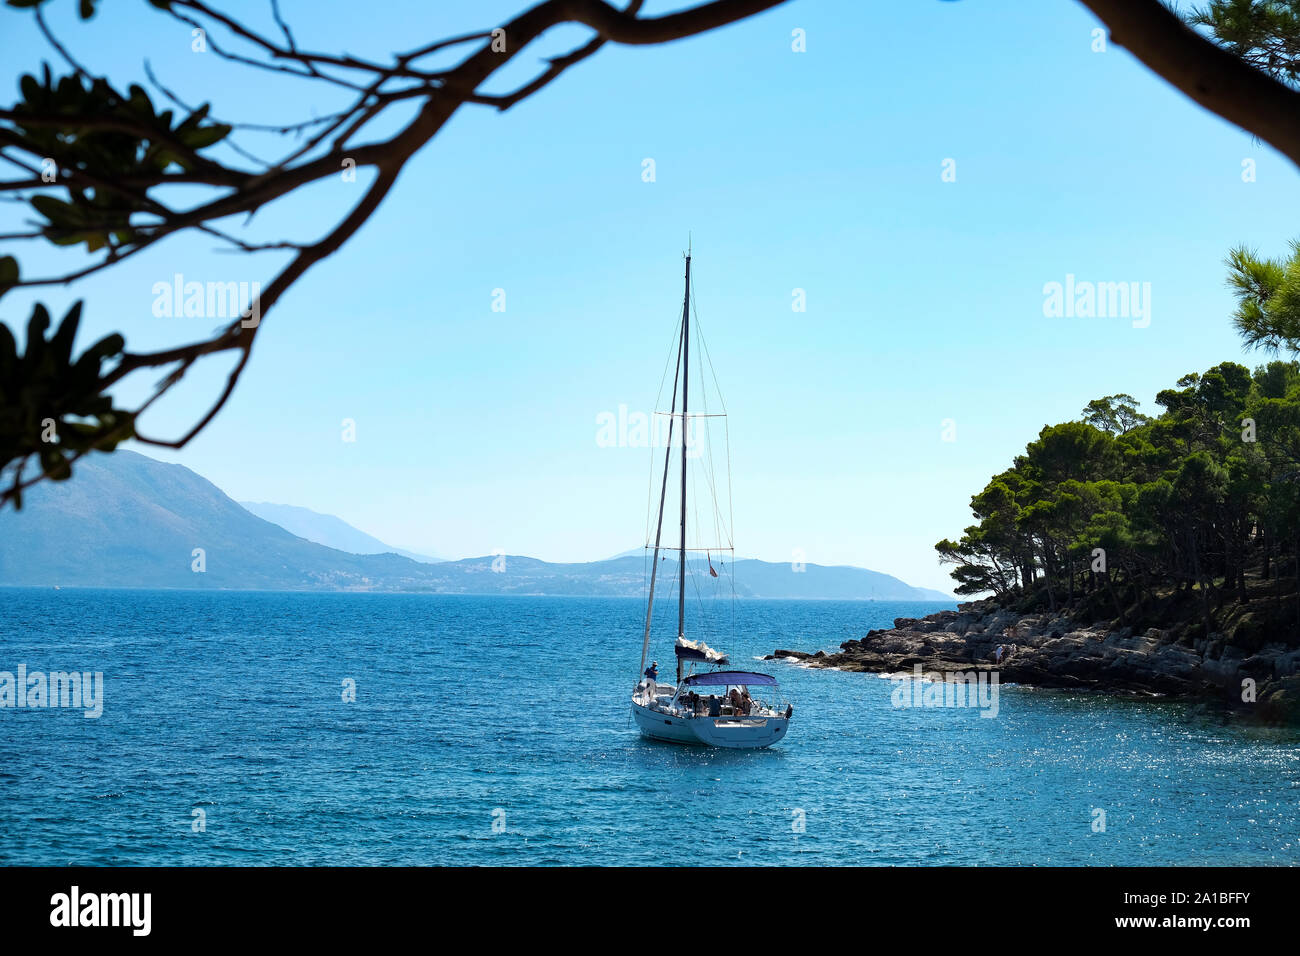 Un yate privado amarrado en una pequeña cala en la isla de Lokrum. La isla Lokrum está situada en el mar Adriático, no muy lejos de Dubrovnik, Croacia Foto de stock